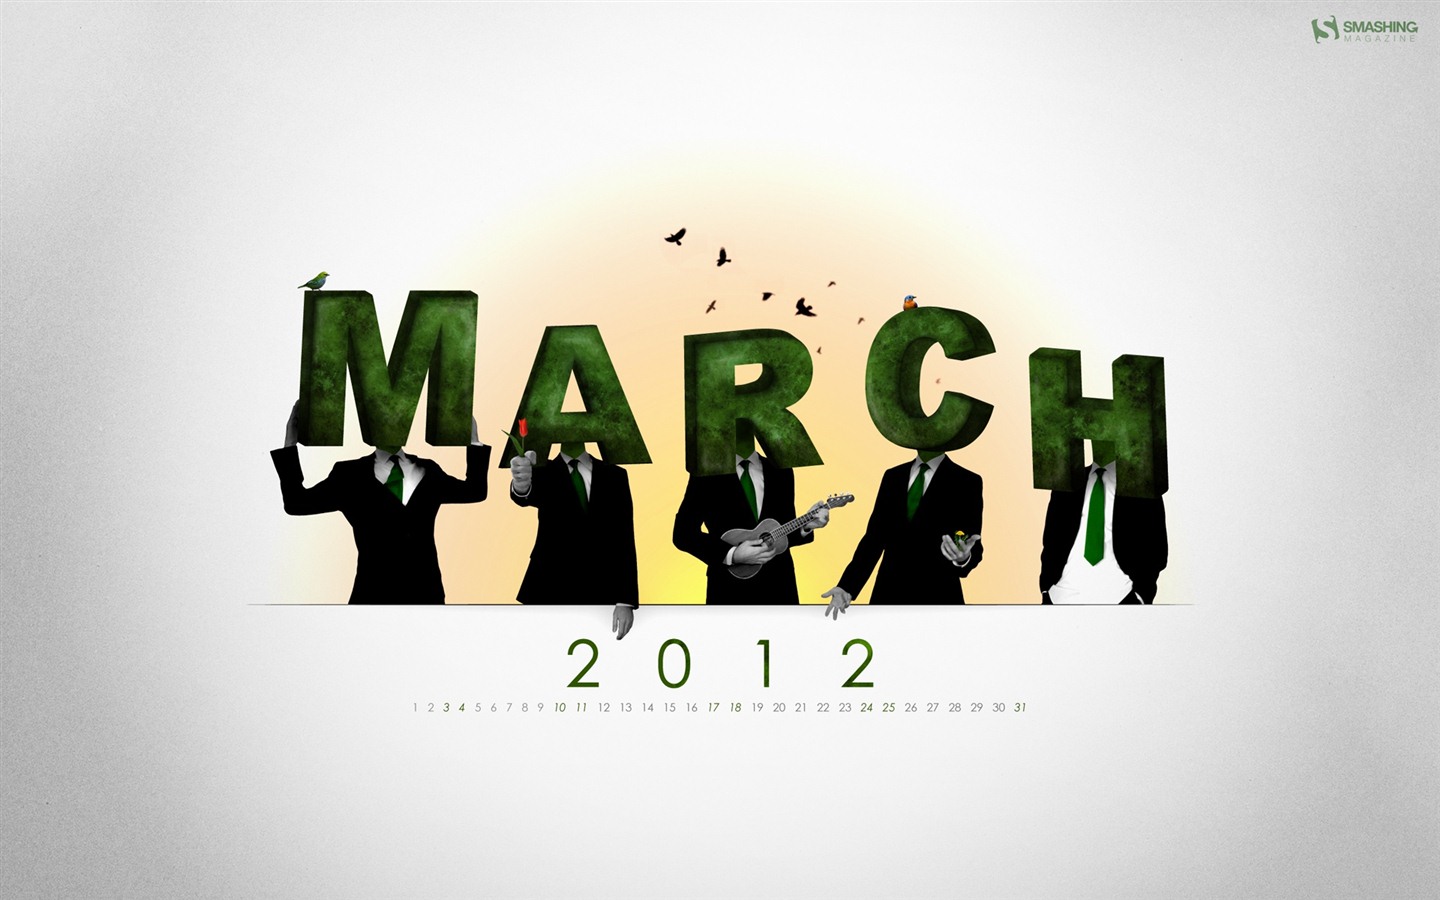 March 2012 Calendar Wallpaper #18 - 1440x900